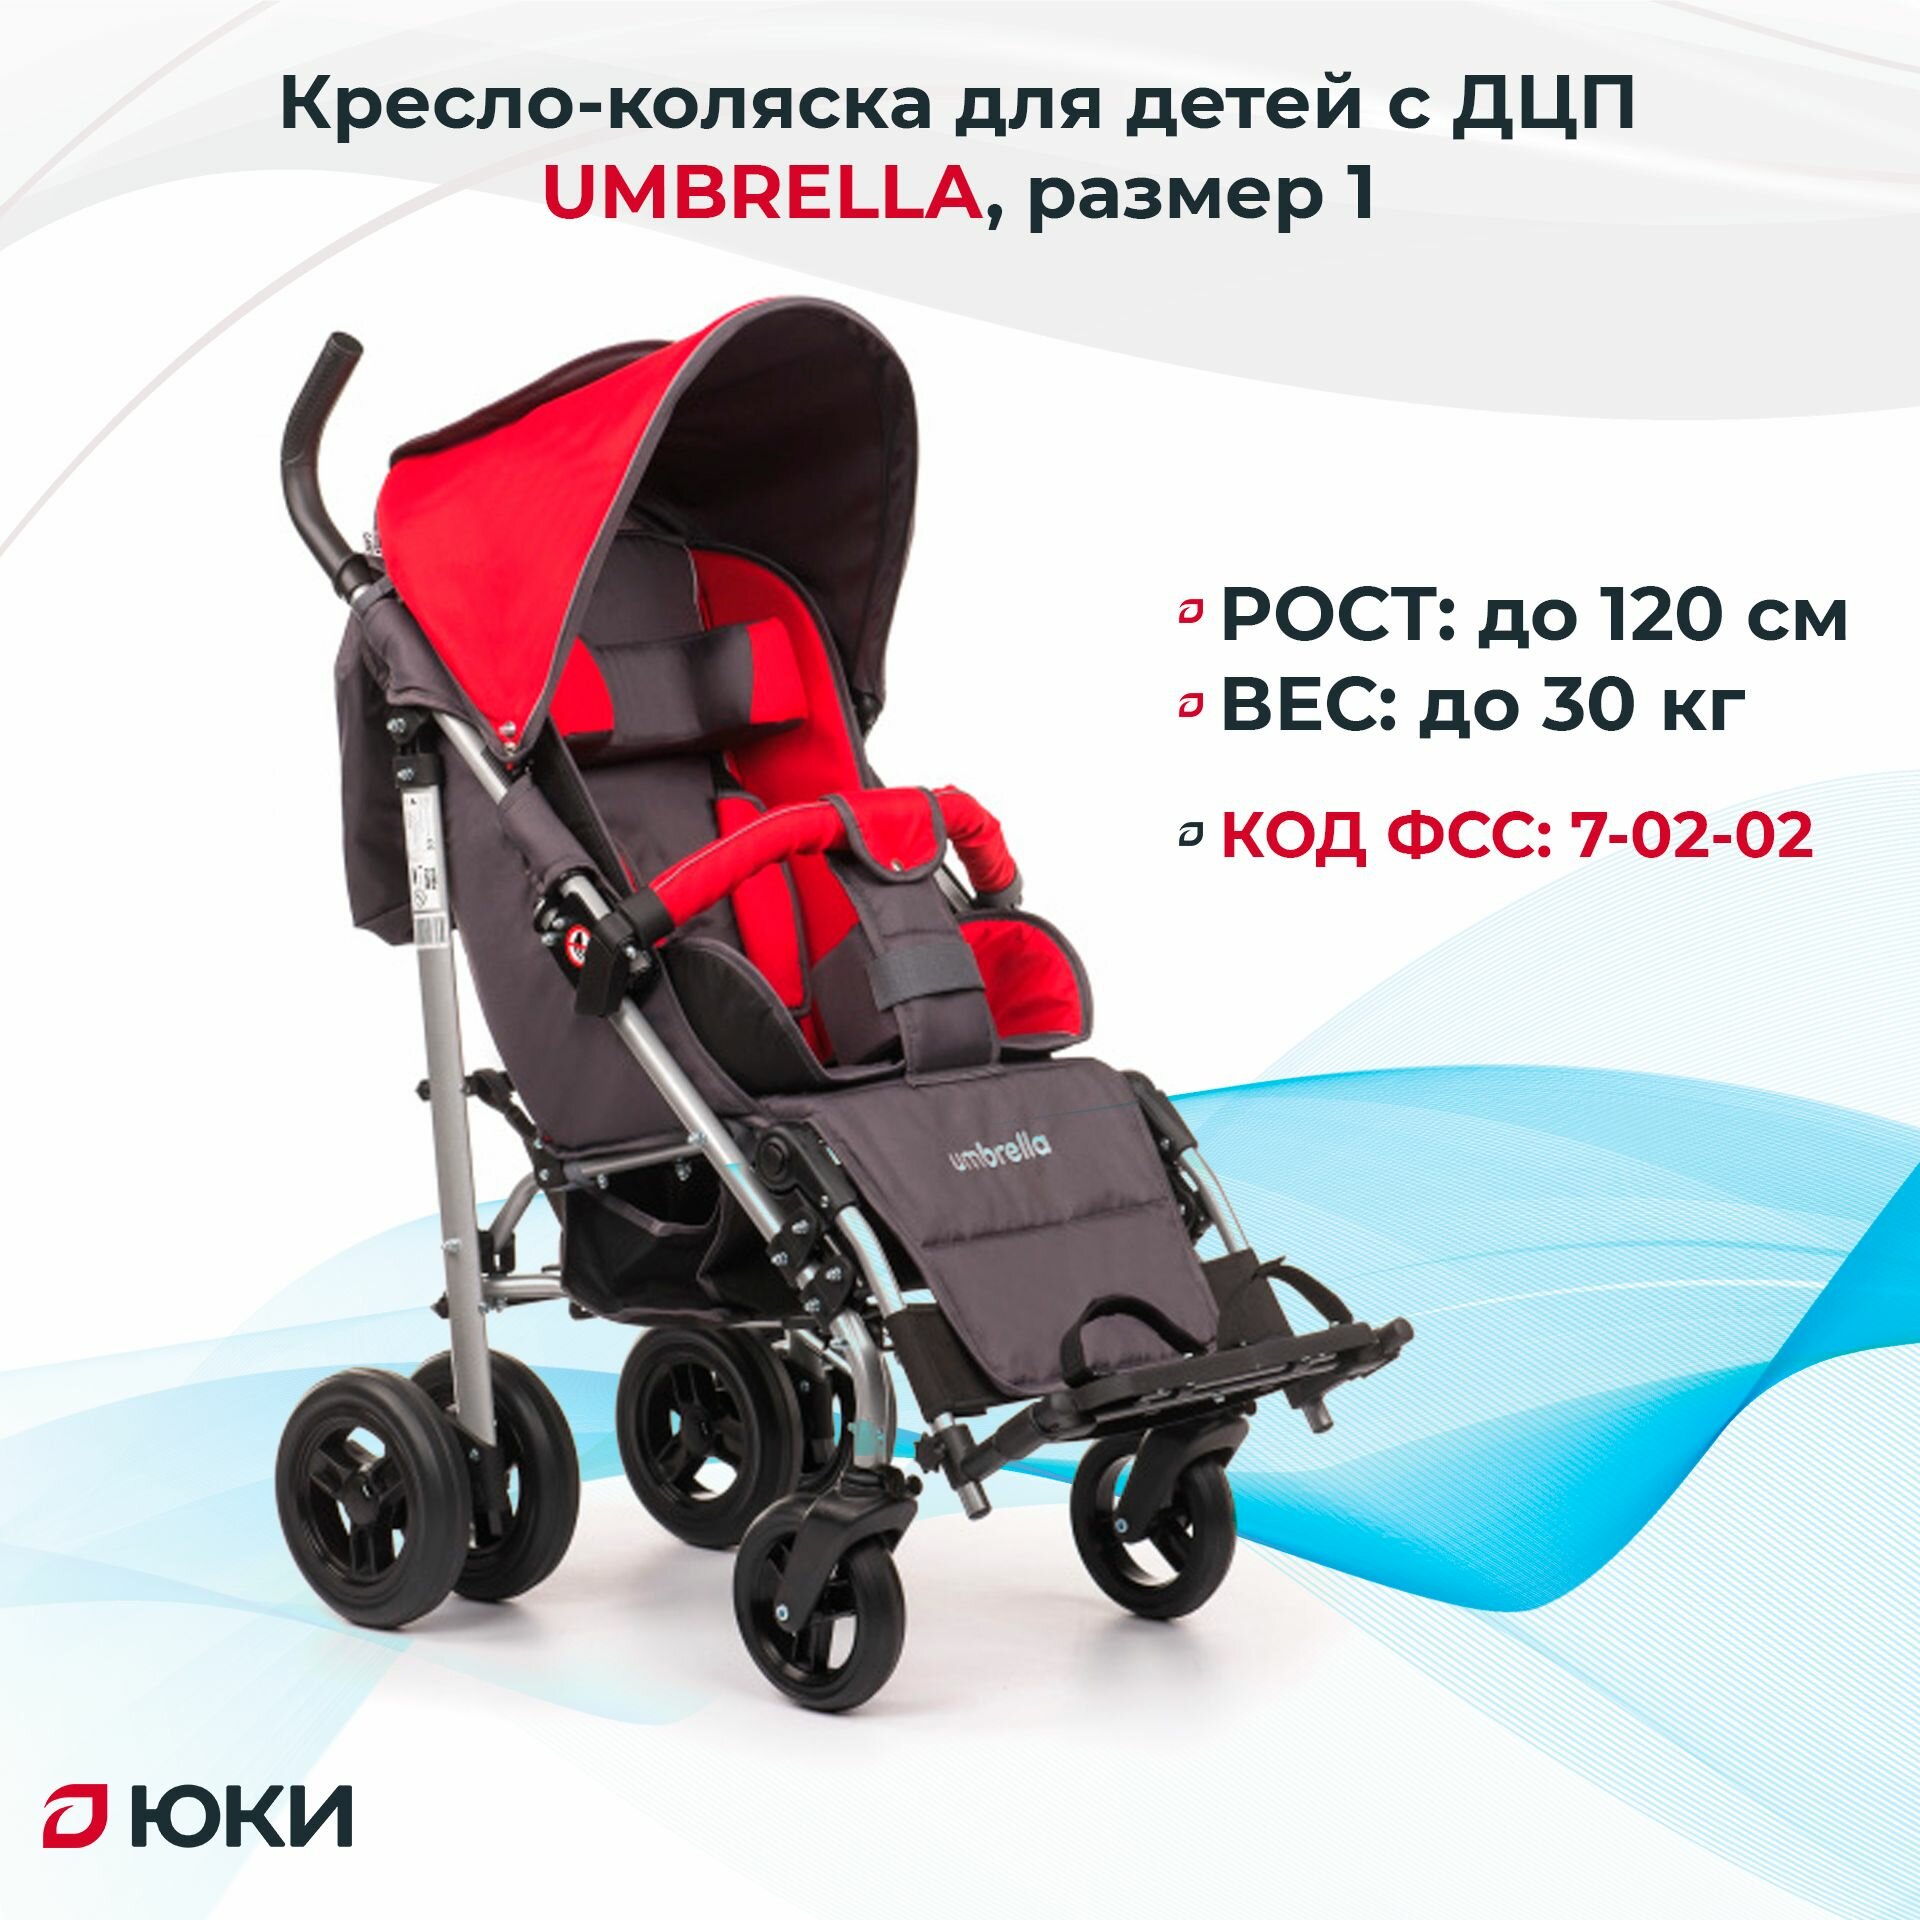 Кресло-коляска для детей с ДЦП Vitea Care UMBRELLA, размер 1 пневматические колеса на рост ребенка 120см, цвет красный